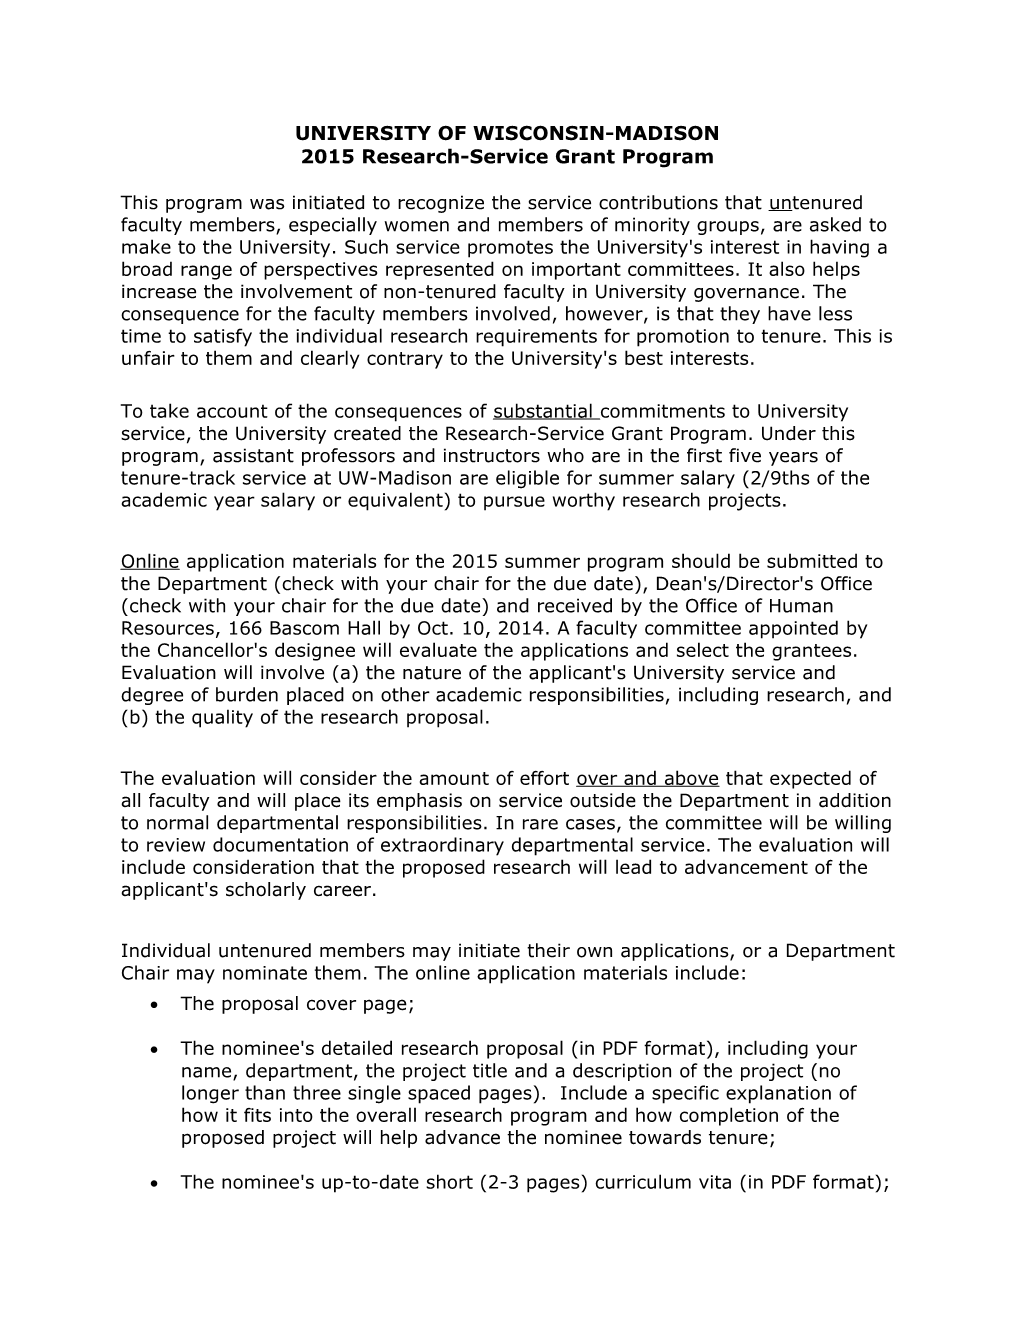 2015 Research-Service Grant Program